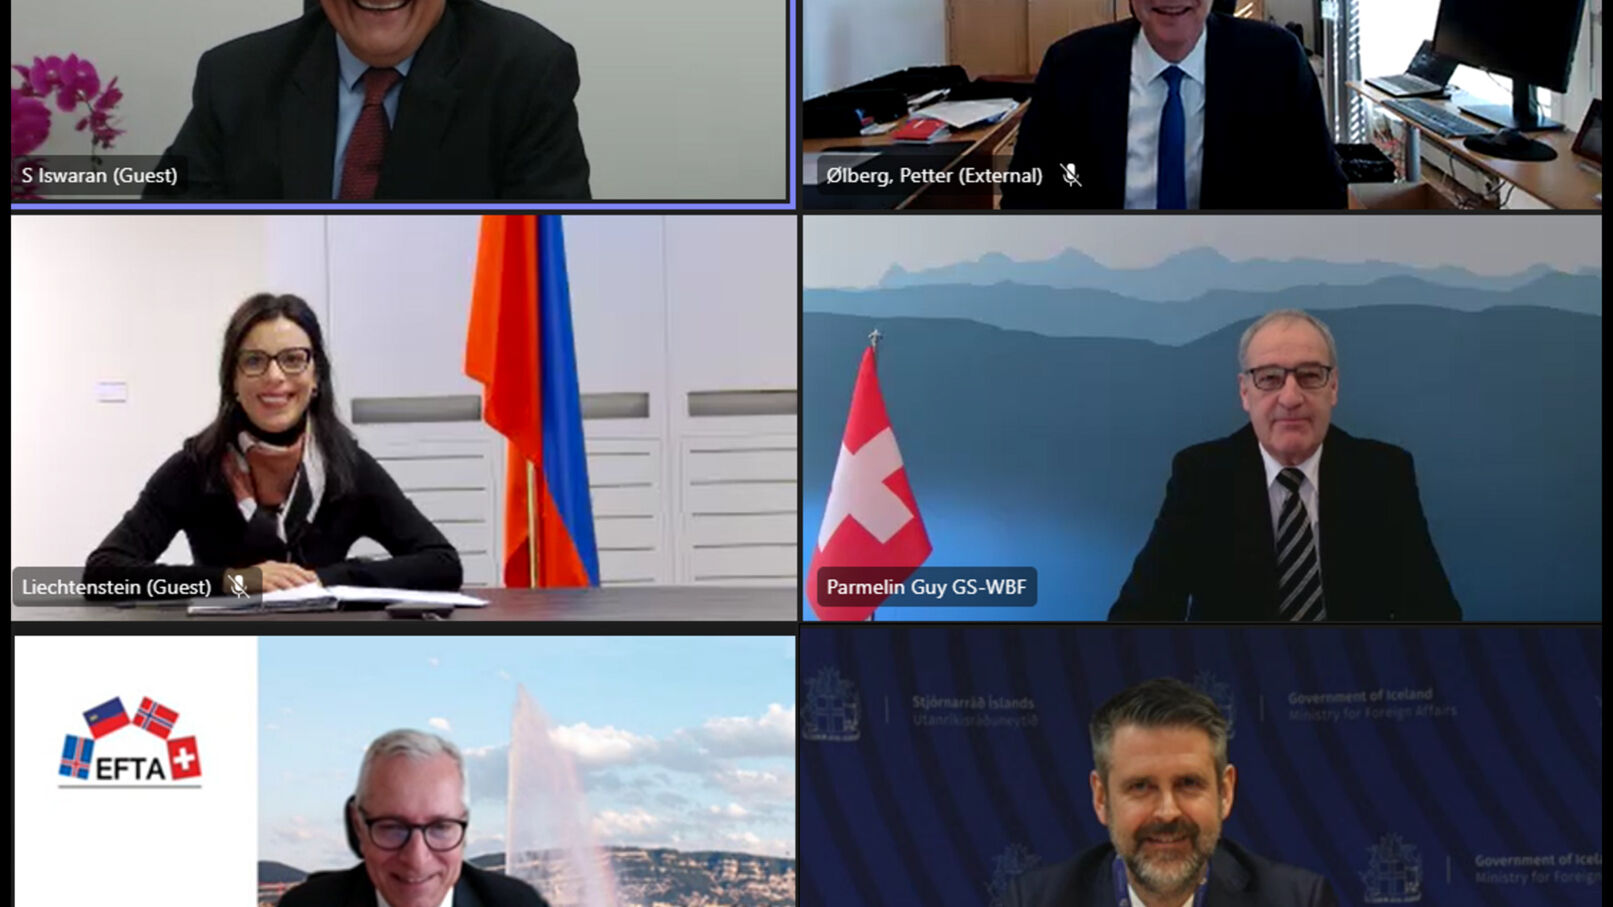 Thương mại kỹ thuật số: vào ngày 16 tháng 2023 năm XNUMX, đại diện cấp cao của các quốc gia thành viên Hiệp hội Thương mại Tự do Châu Âu (EFTA) và Cộng hòa Singapore, do Bộ trưởng S. Iswaran đại diện nhân dịp này, đã gặp gỡ trực tuyến để bắt đầu đàm phán về một thỏa thuận liên quan đến nền kinh tế kỹ thuật số: Dominique Hasler (Liechtenstein), Guy Parmelin (Thụy Sĩ), Martin Eyjólfsson (Iceland) và Petter Ølberg (Na Uy) đã có mặt